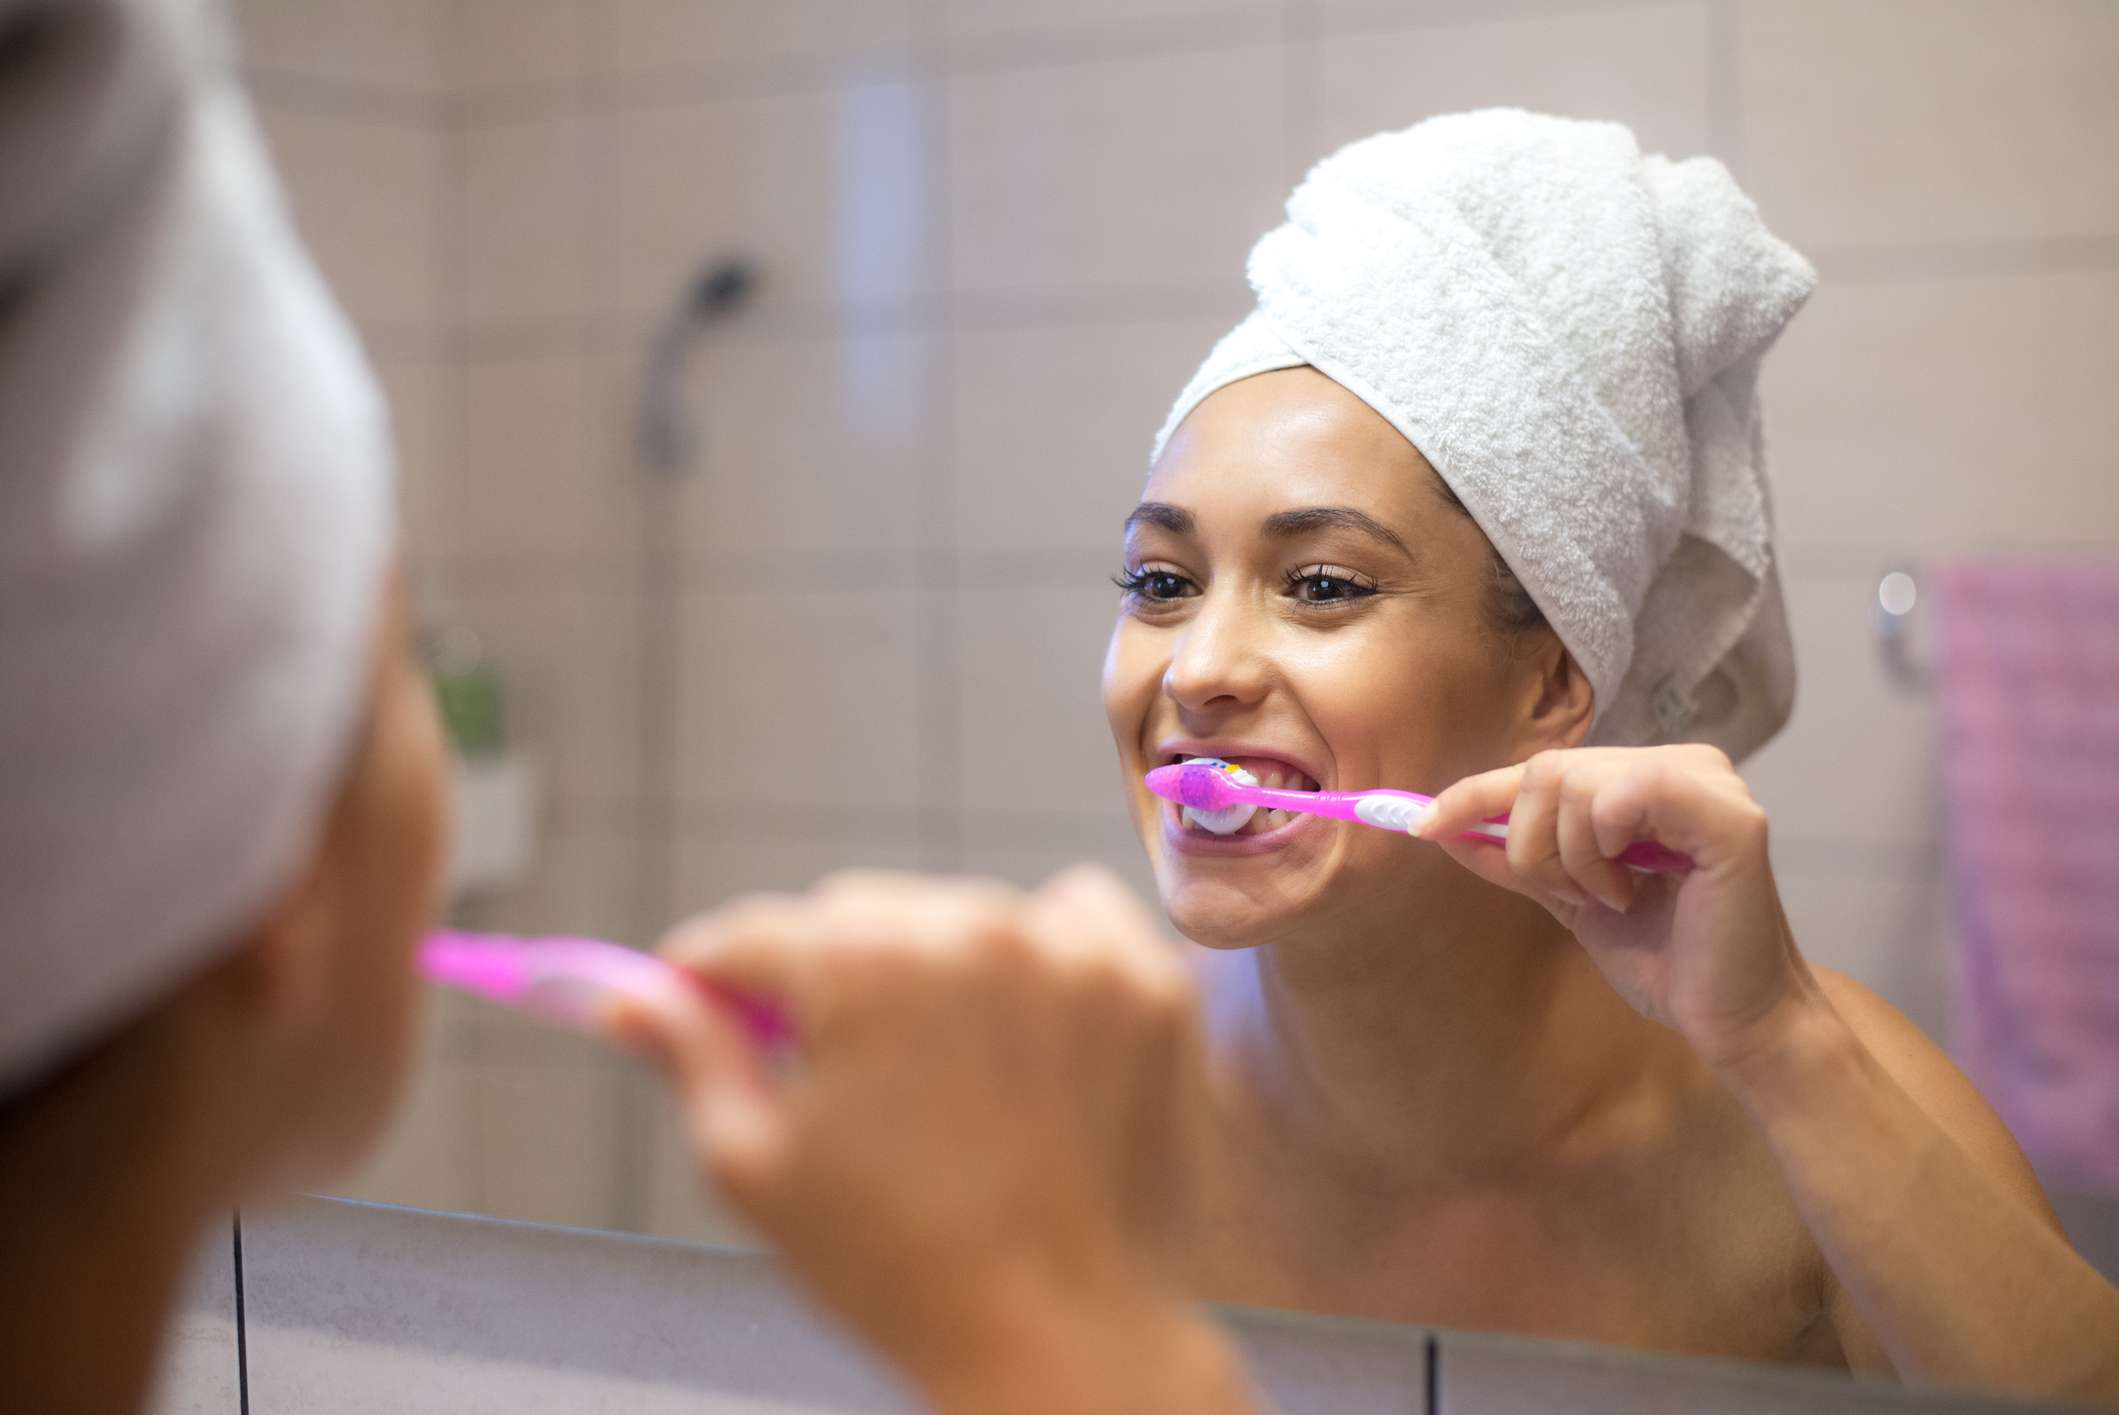 Una mujer cepillándose los dientes mirándose al espejo